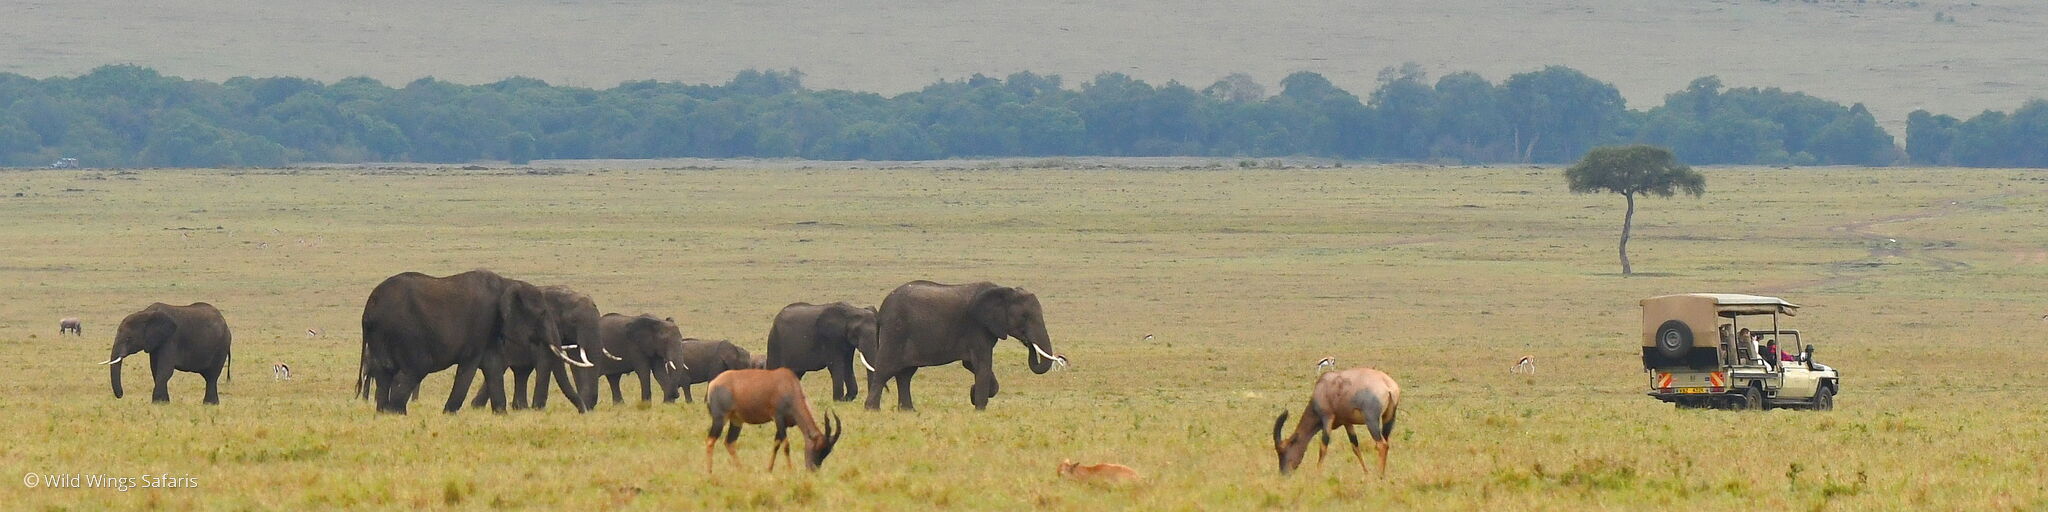 The Masai Mara outside Migration season